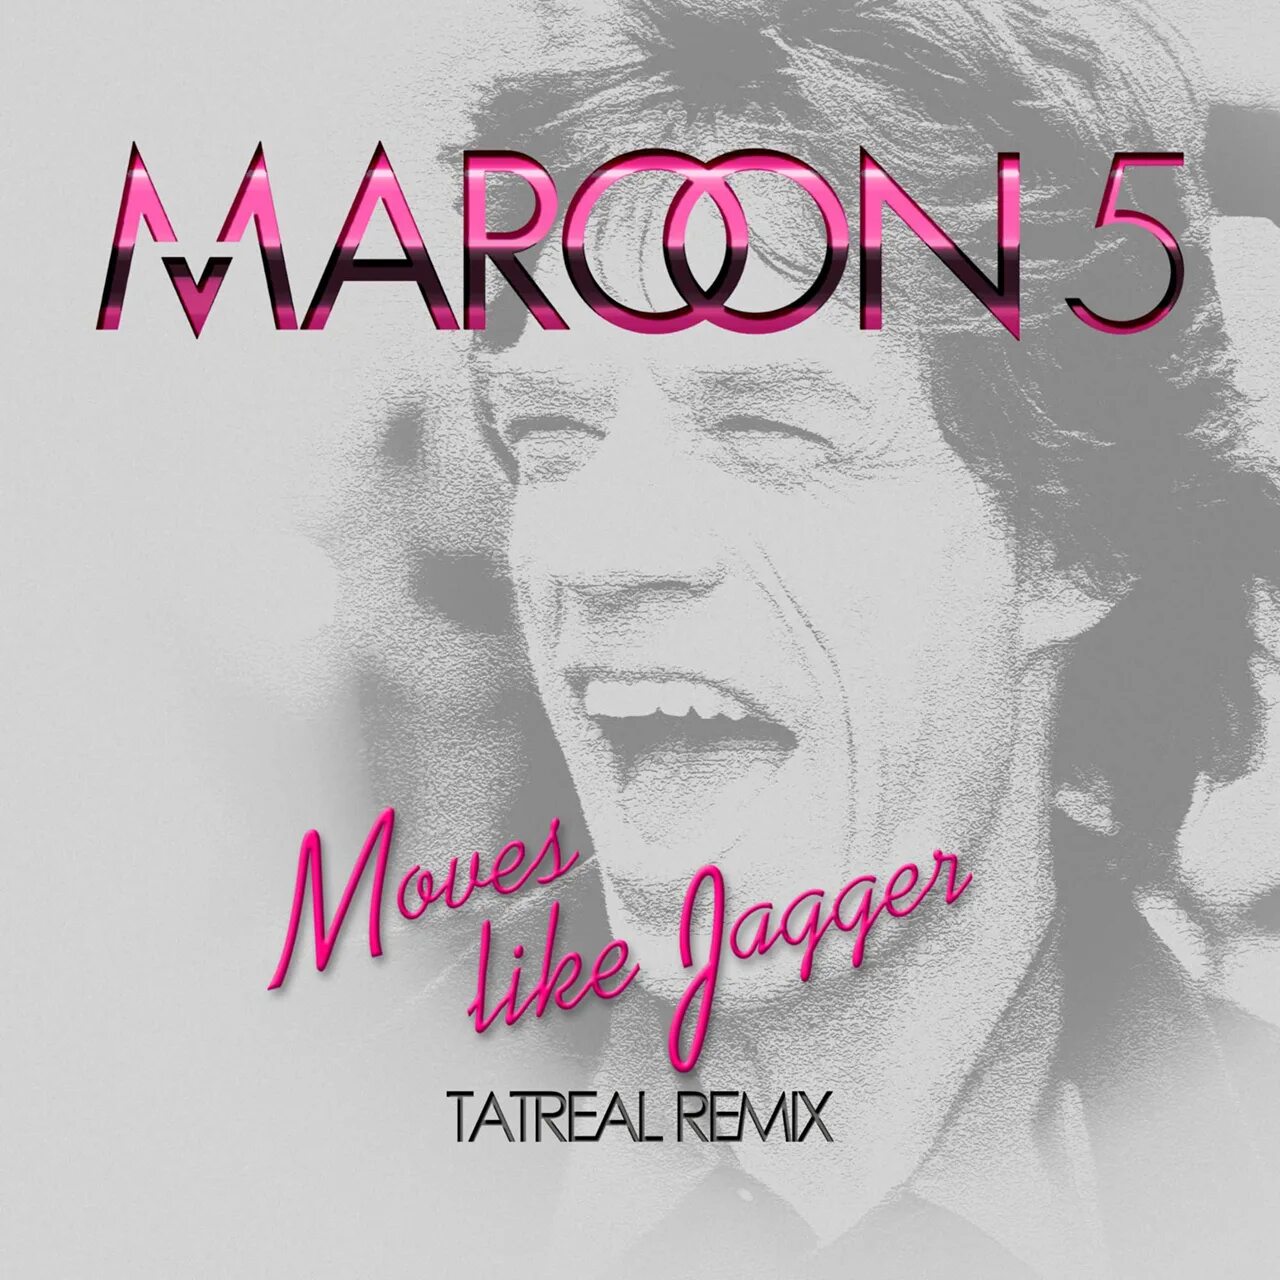 Maroon 5 Джаггер. Марон 5 мув лайк Джаггер. Moves like Jagger Maroon. Moves like Jaggar. Лайк джаггер